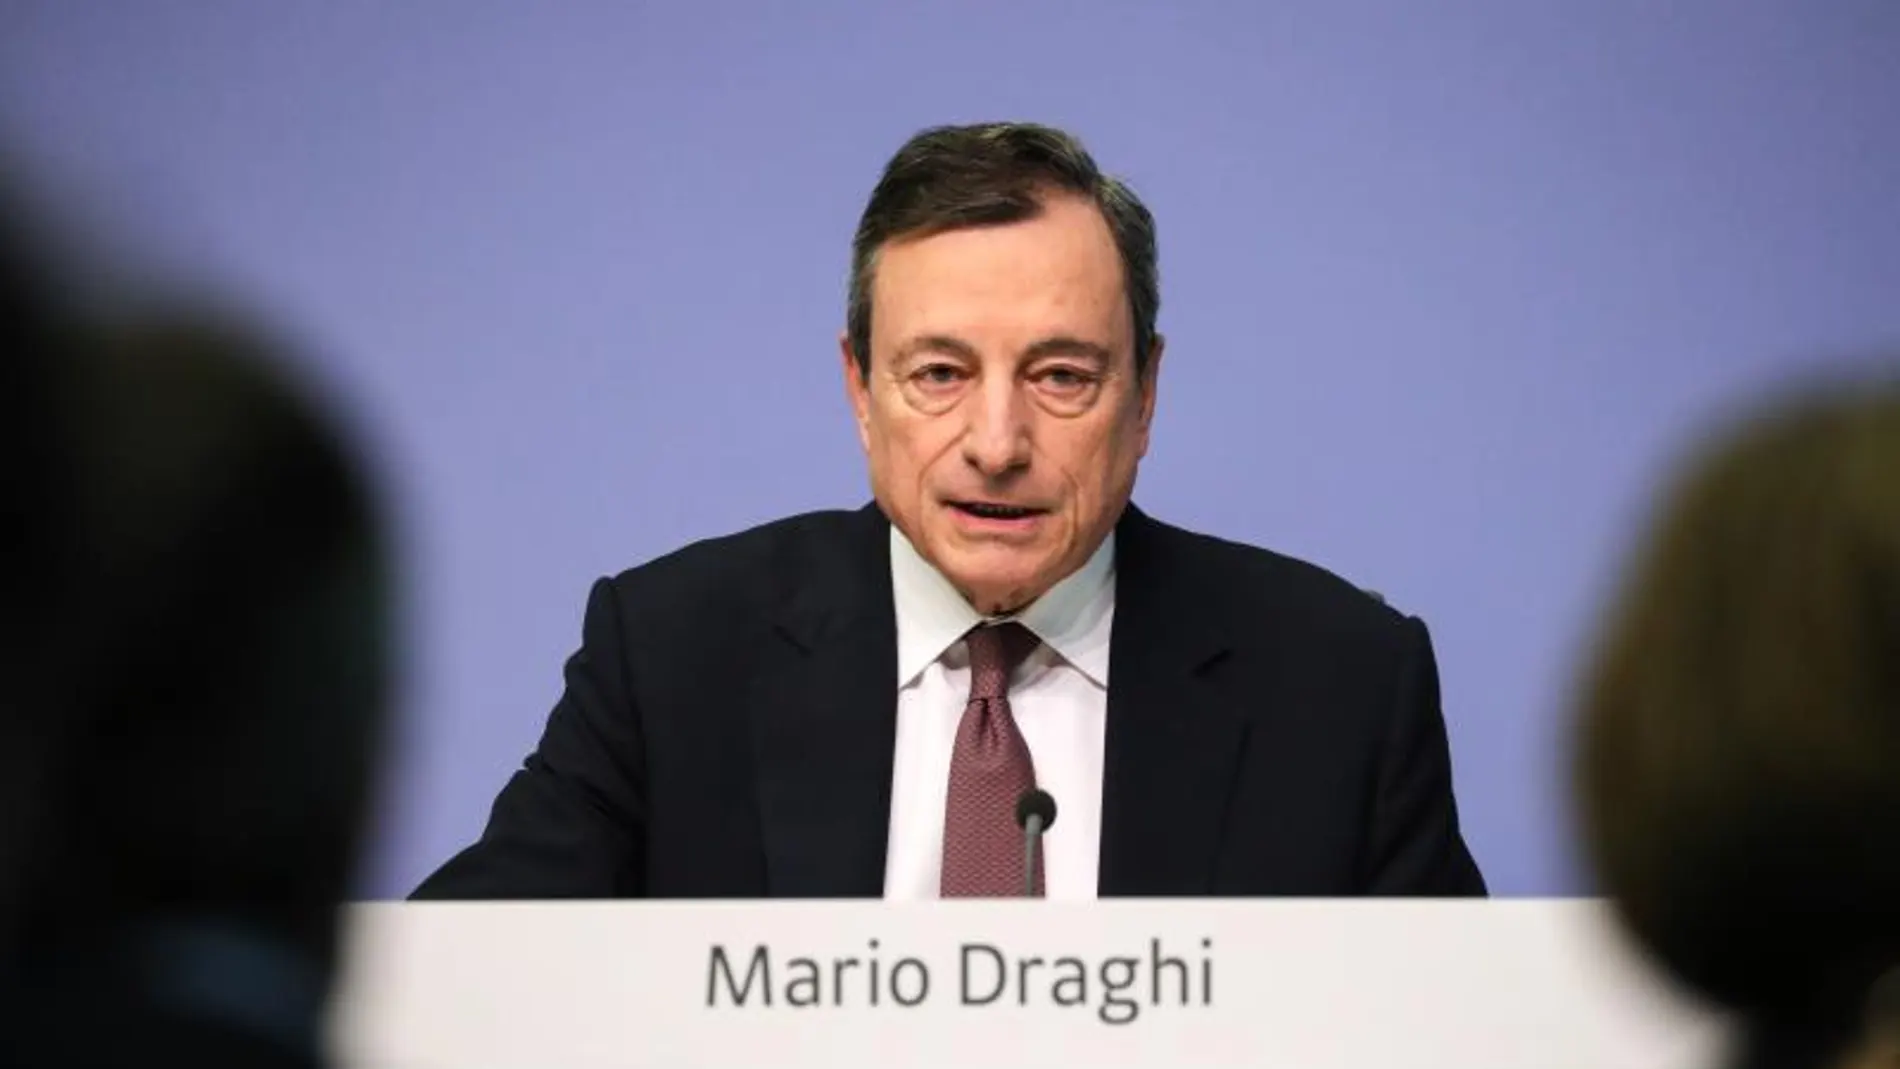 El ex presidente del BCE, Mario Draghi